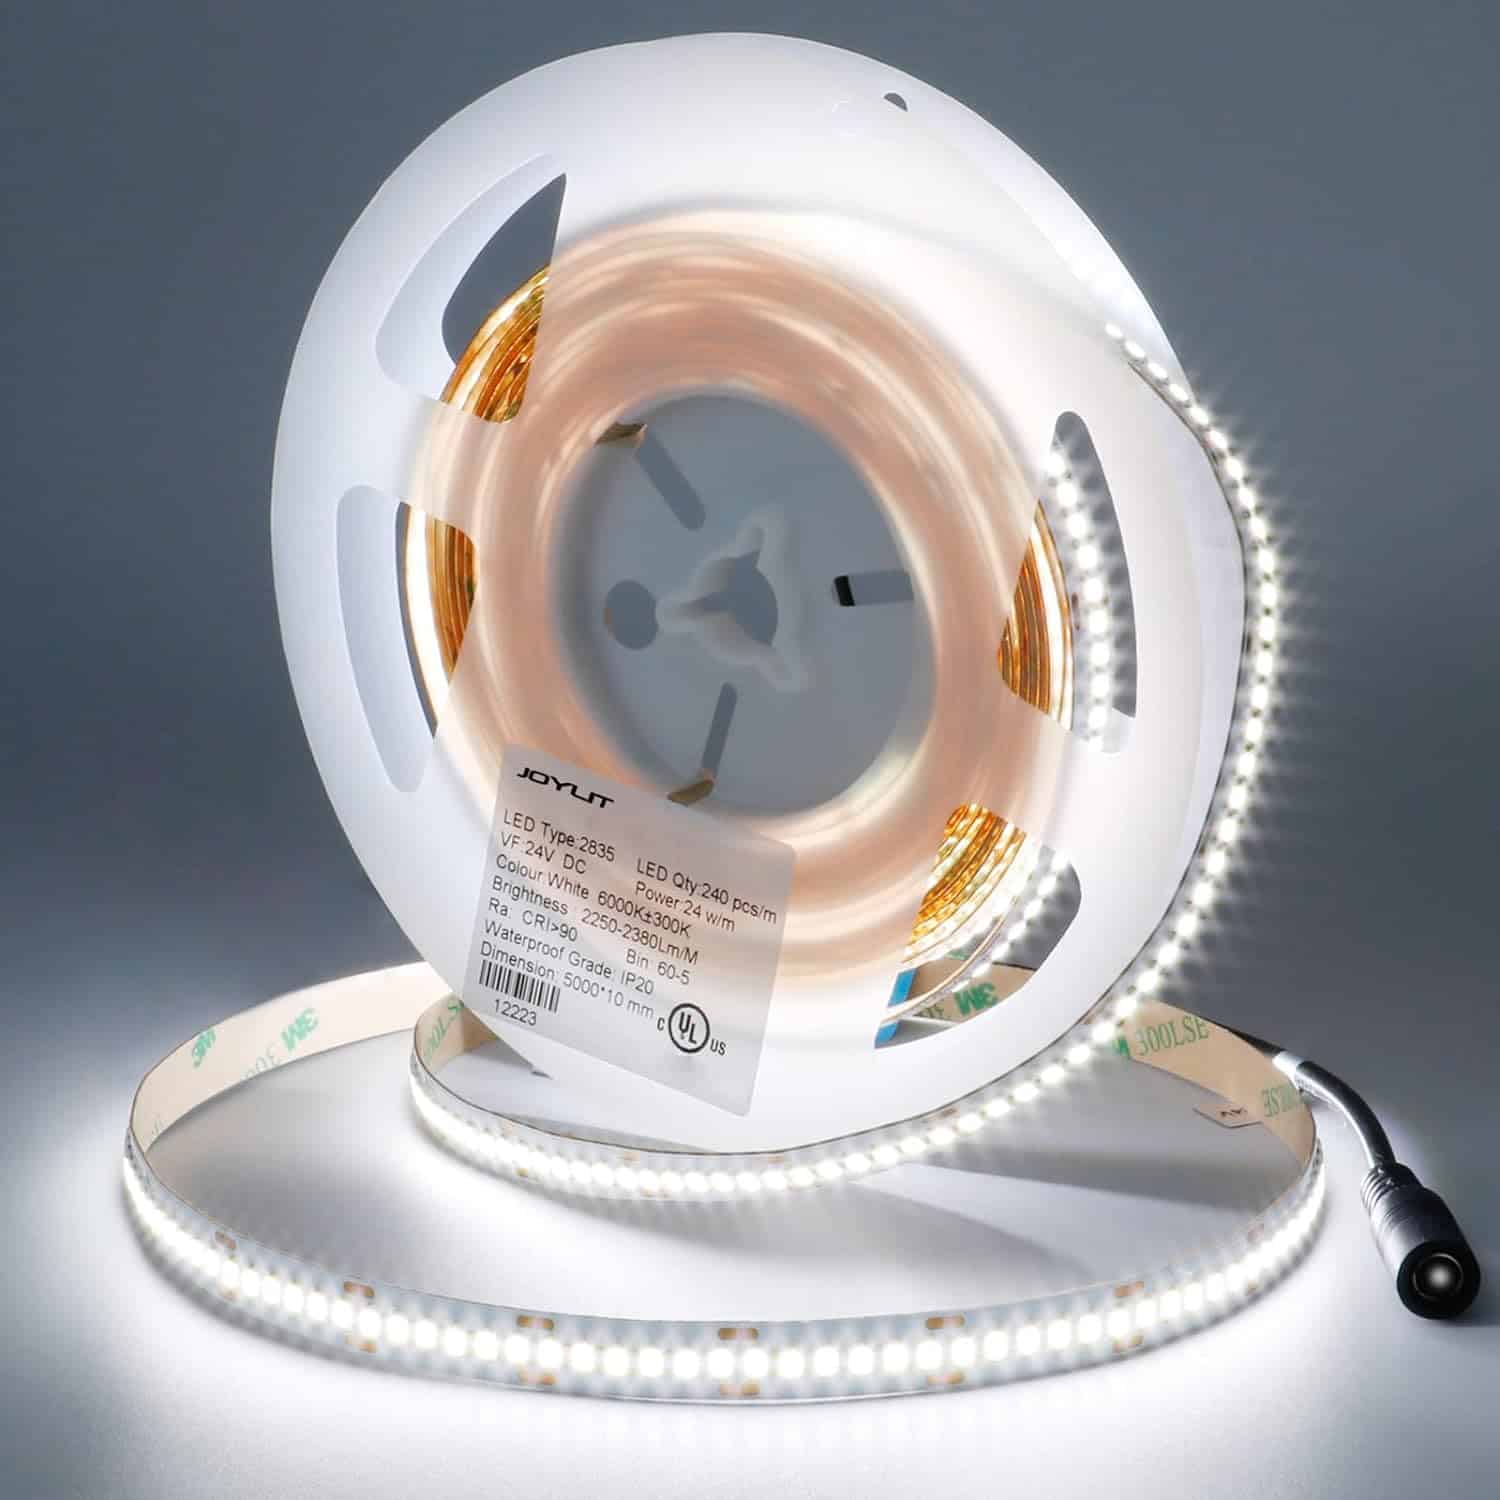 JOYLIT 24V LED Strip Lights 6000K White 683lm/ft 16.4ft Non Waterproof, UL Premium Ultra Bright CRI 90+ 1200LEDs Density SMD 2835 11200lm Dimmable Tape Light for Ceiling, Commercial Task Lighting